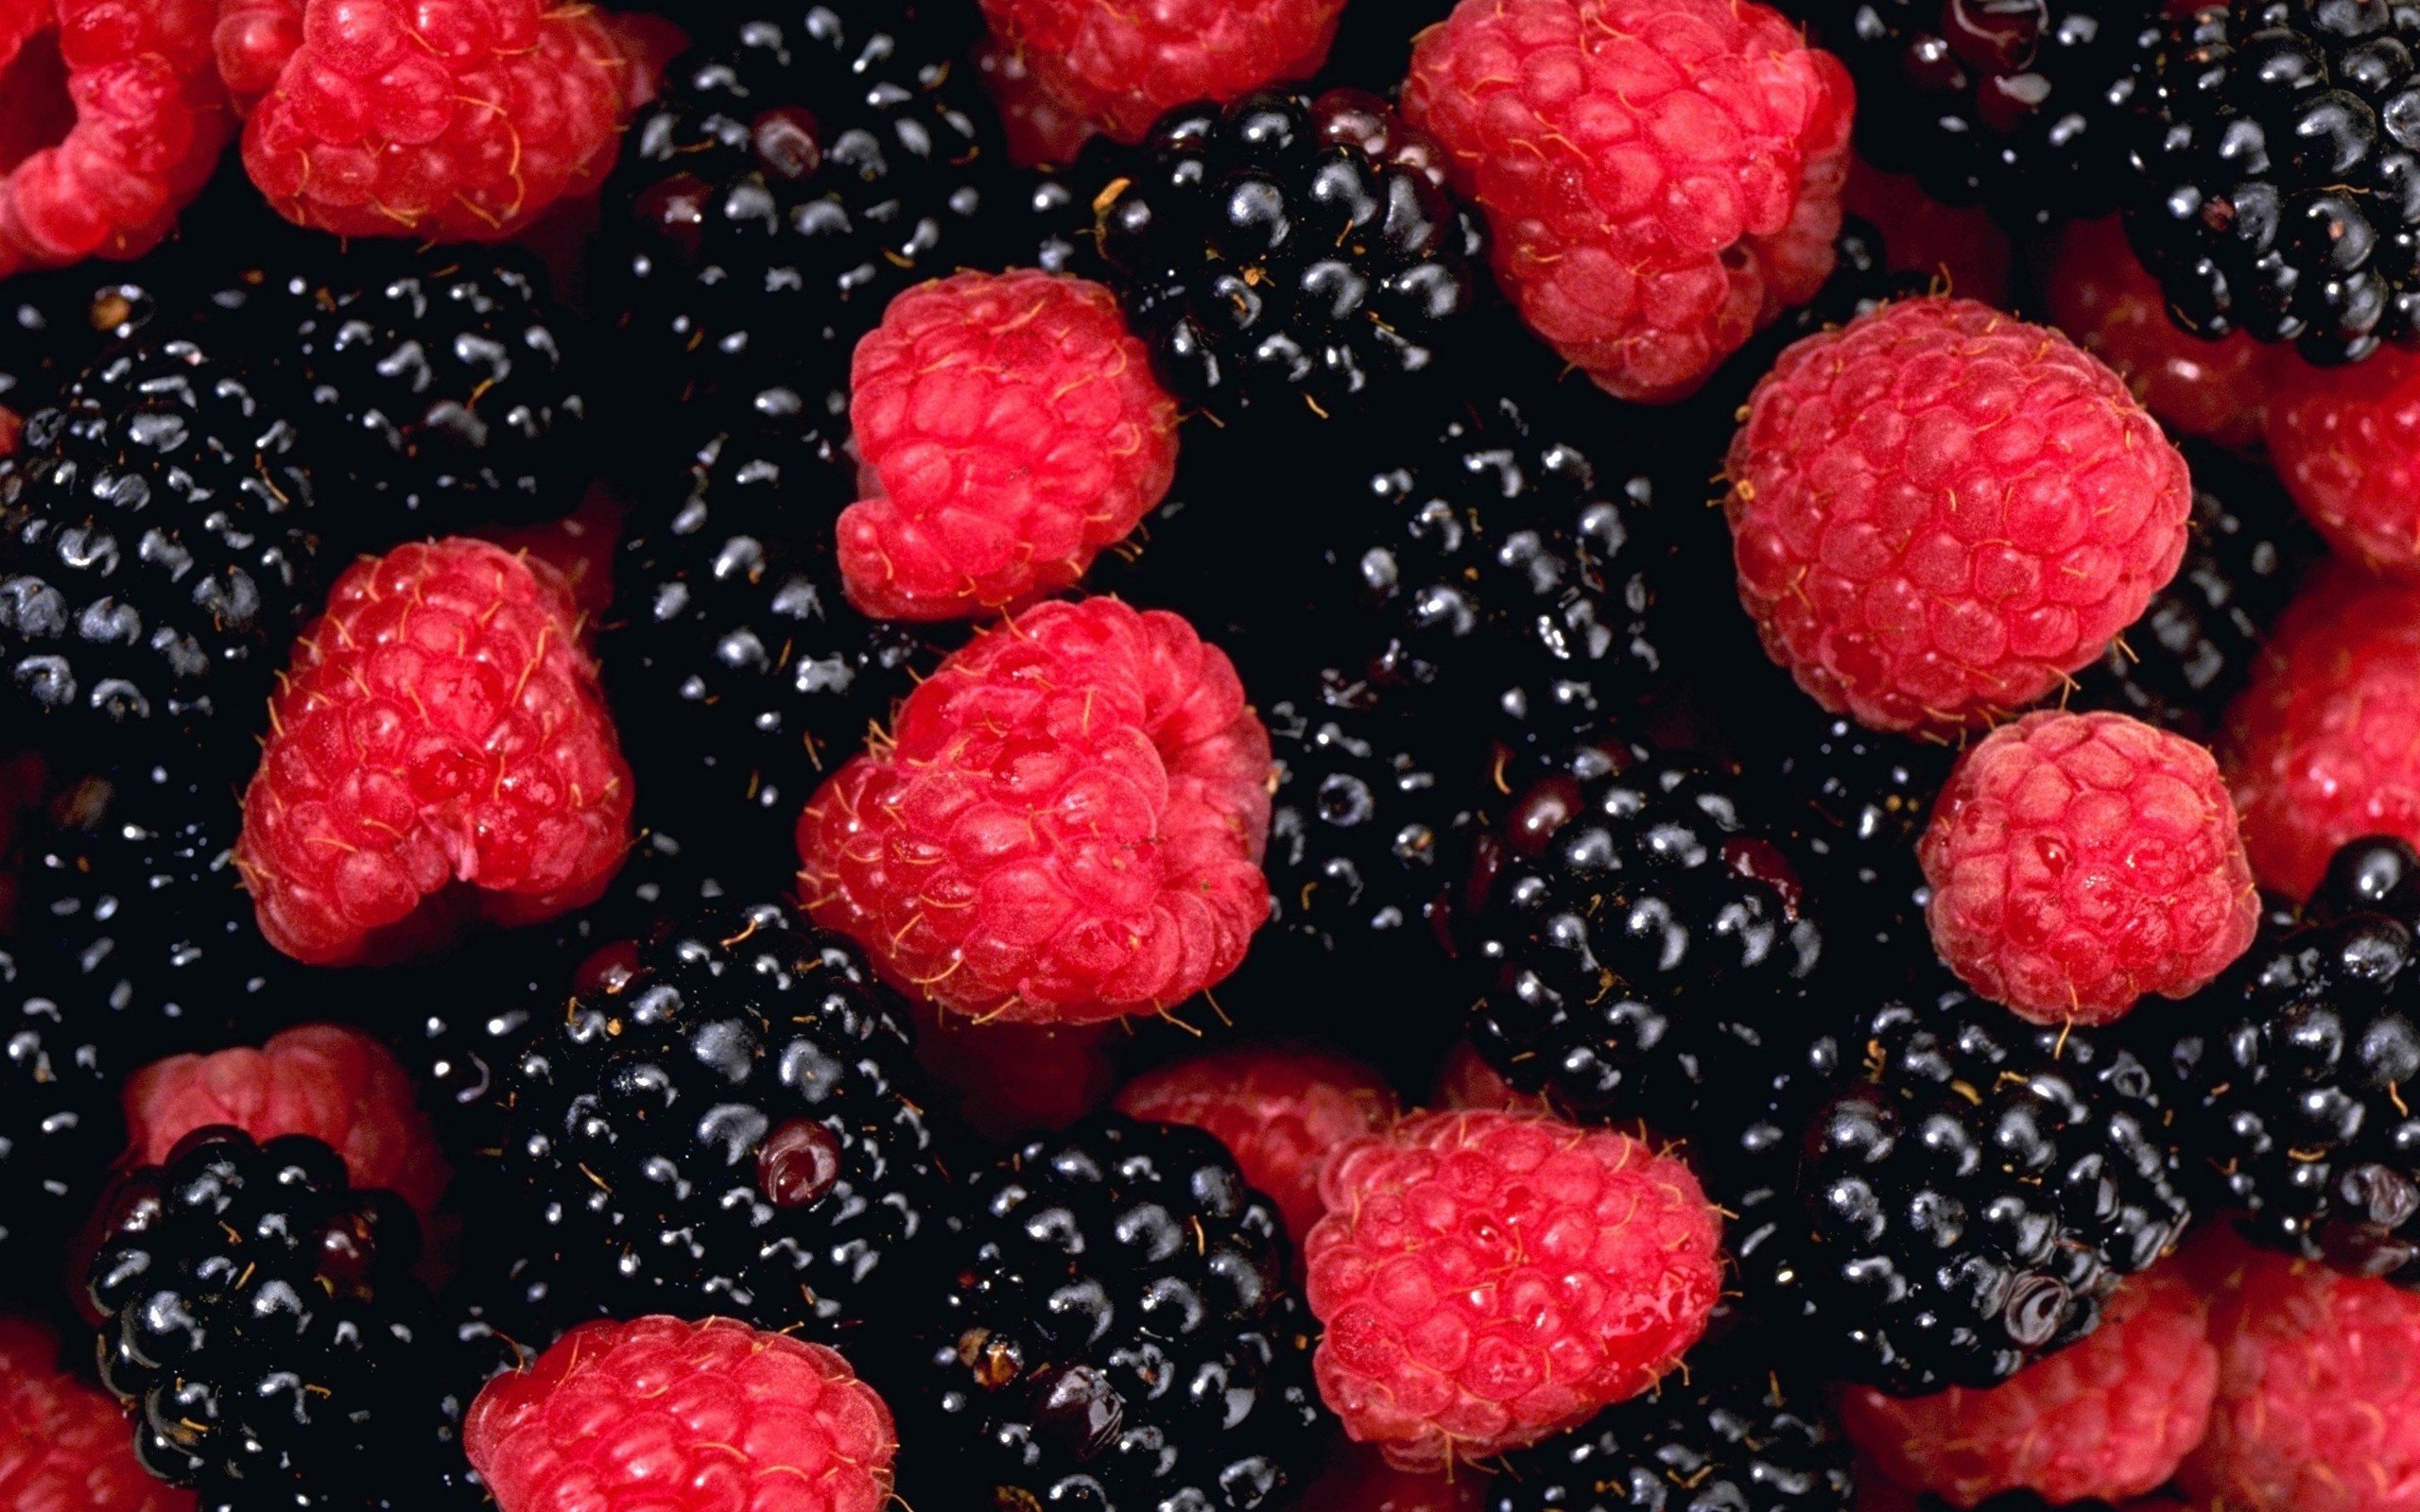 fruits, Raspberries, Blackberries Wallpaper